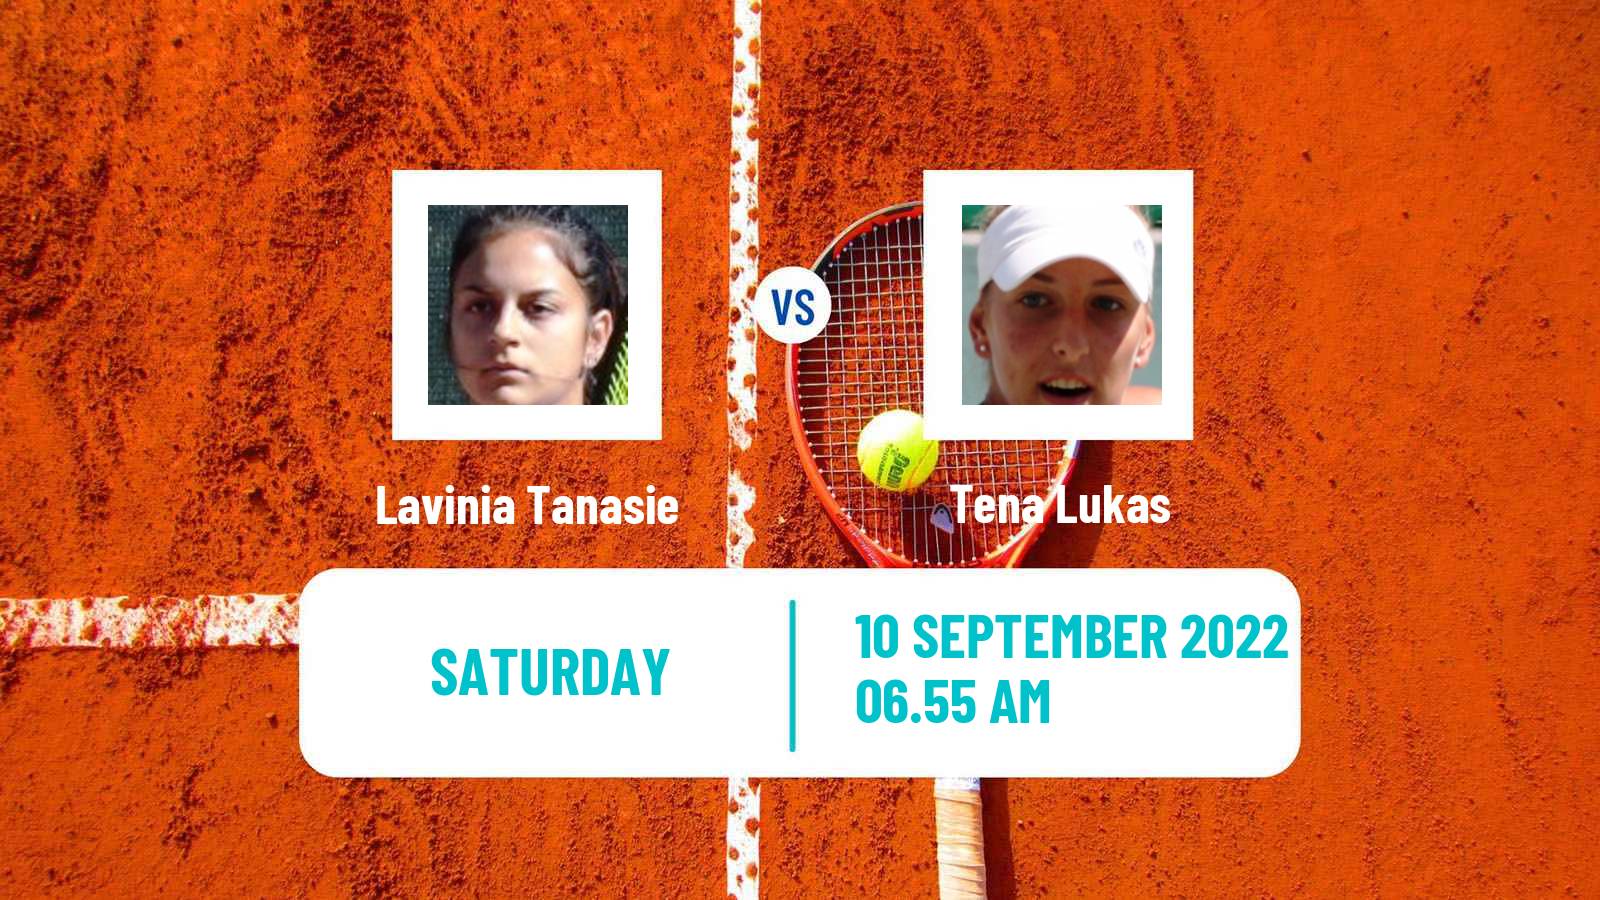 Tennis ATP Challenger Lavinia Tanasie - Tena Lukas